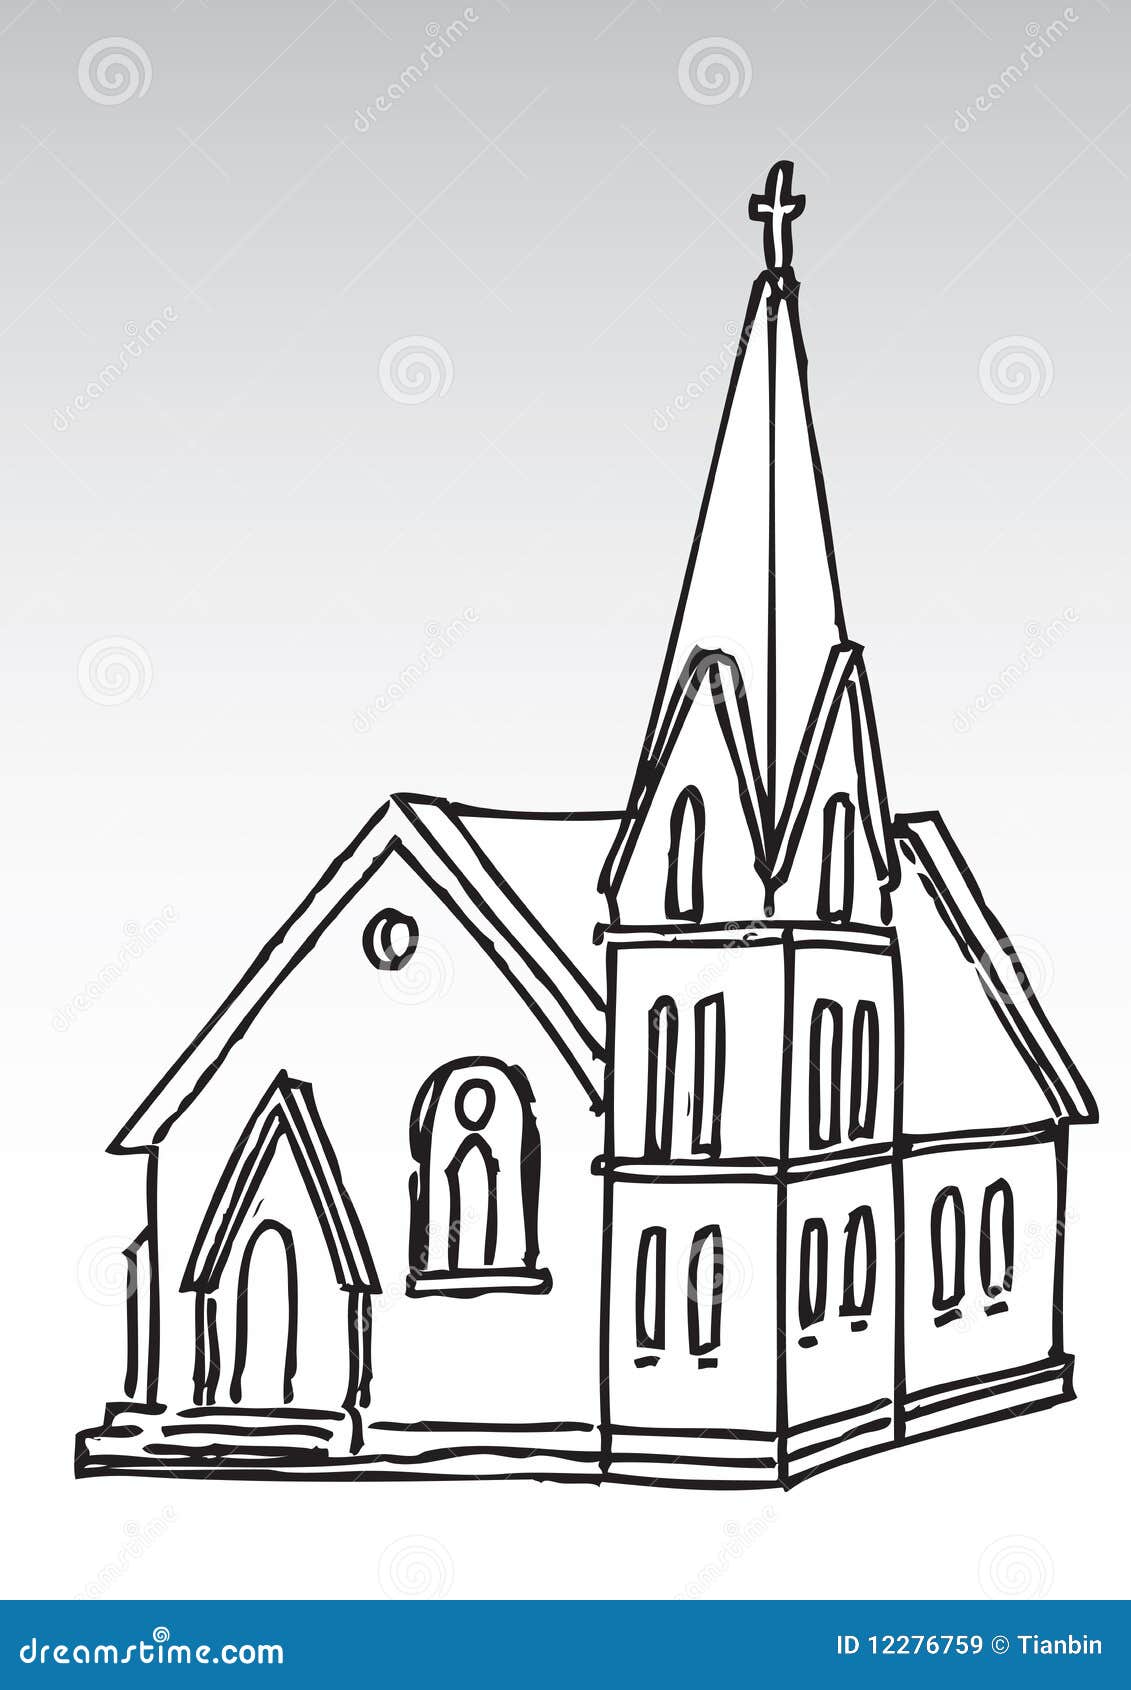 church silhouette clip art free - photo #39